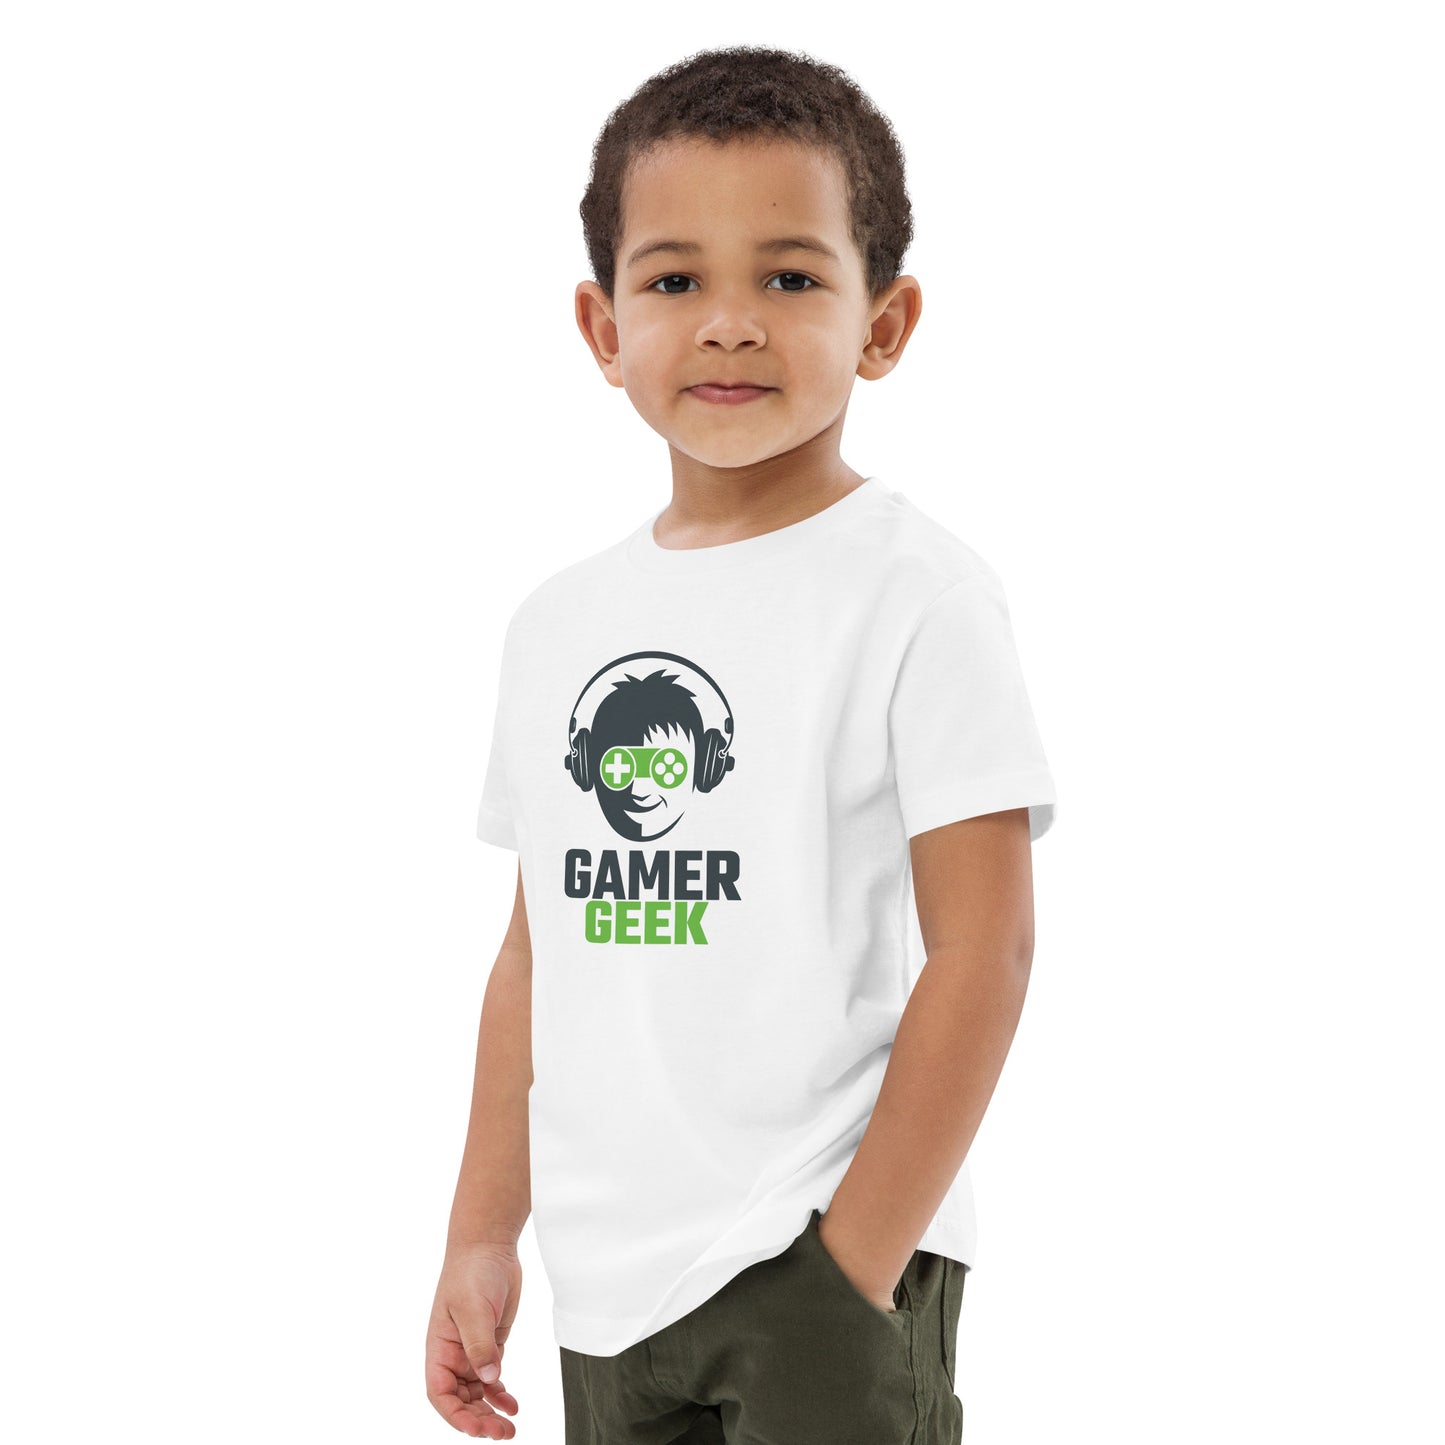 Gamer Geek - Organic cotton kids t-shirt - HobbyMeFree